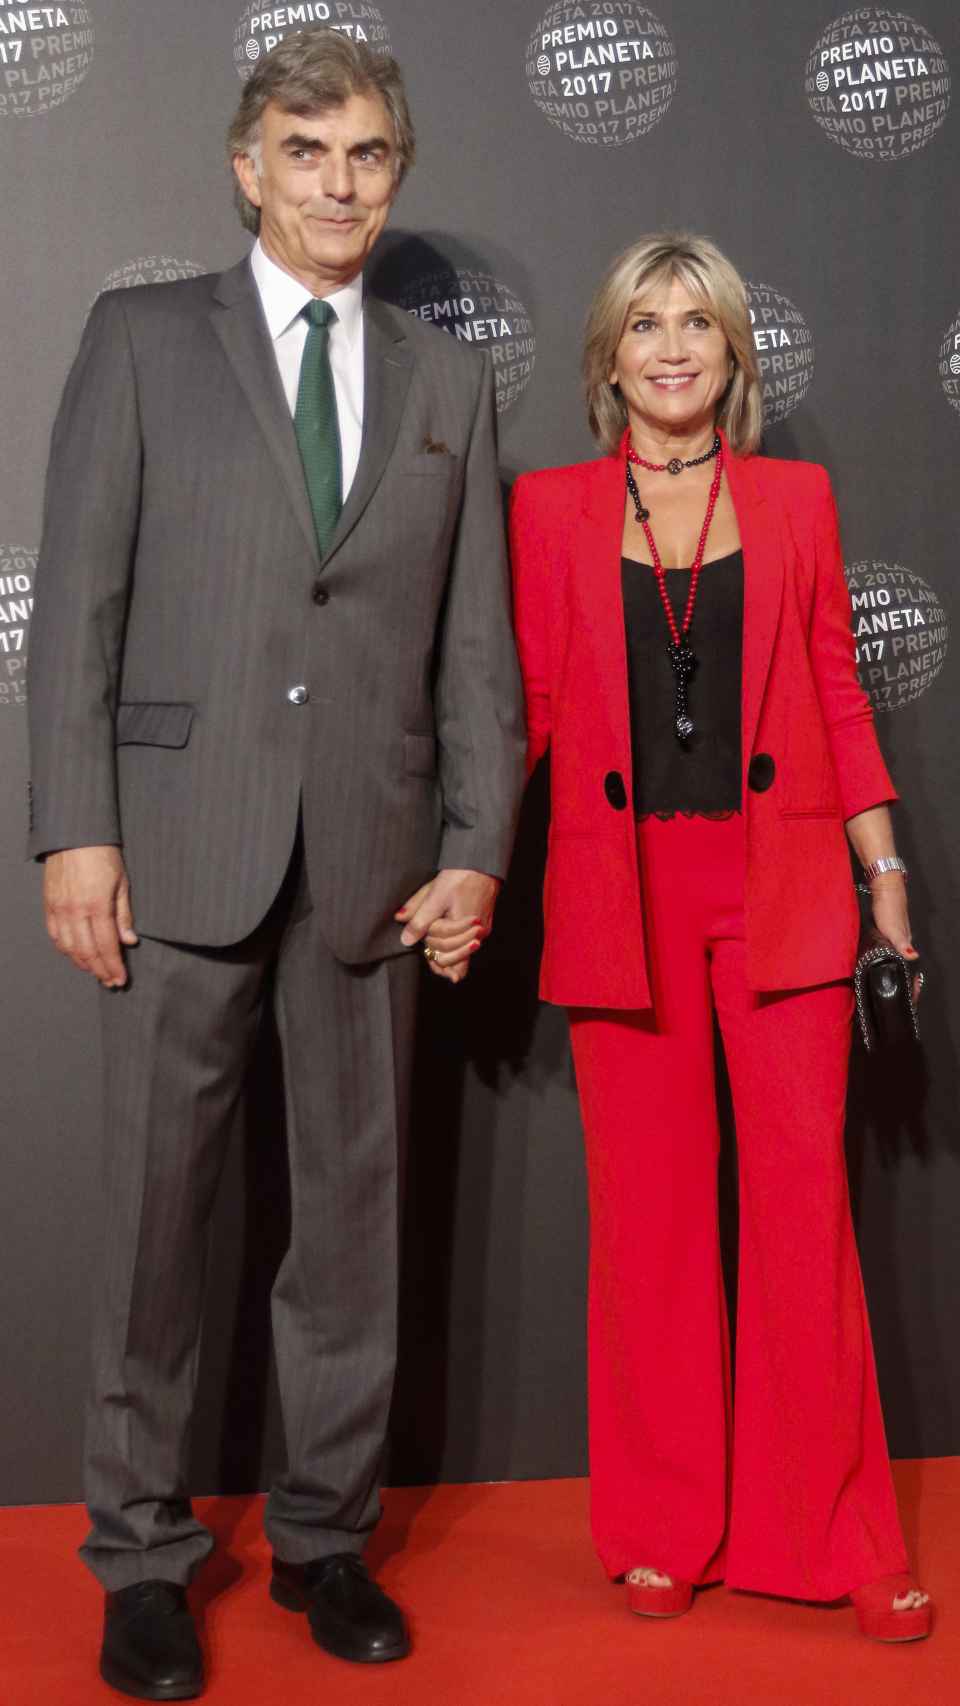 Julia junto a su pareja Josep en 2017.